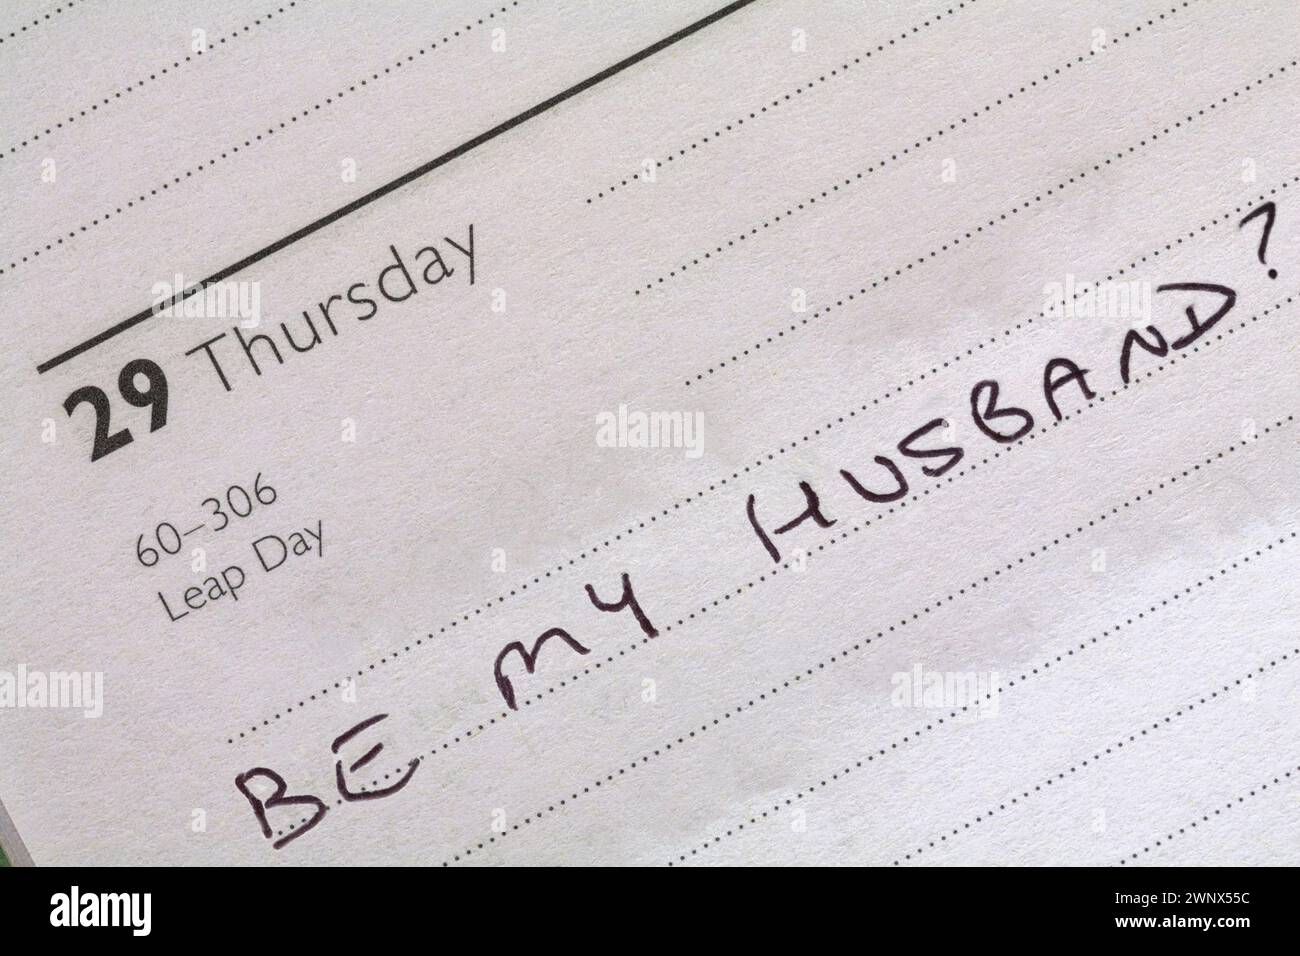 29 febbraio anno bisestile con messaggio essere mio marito? scritto in diario - proposta per l'anno bisestile Foto Stock